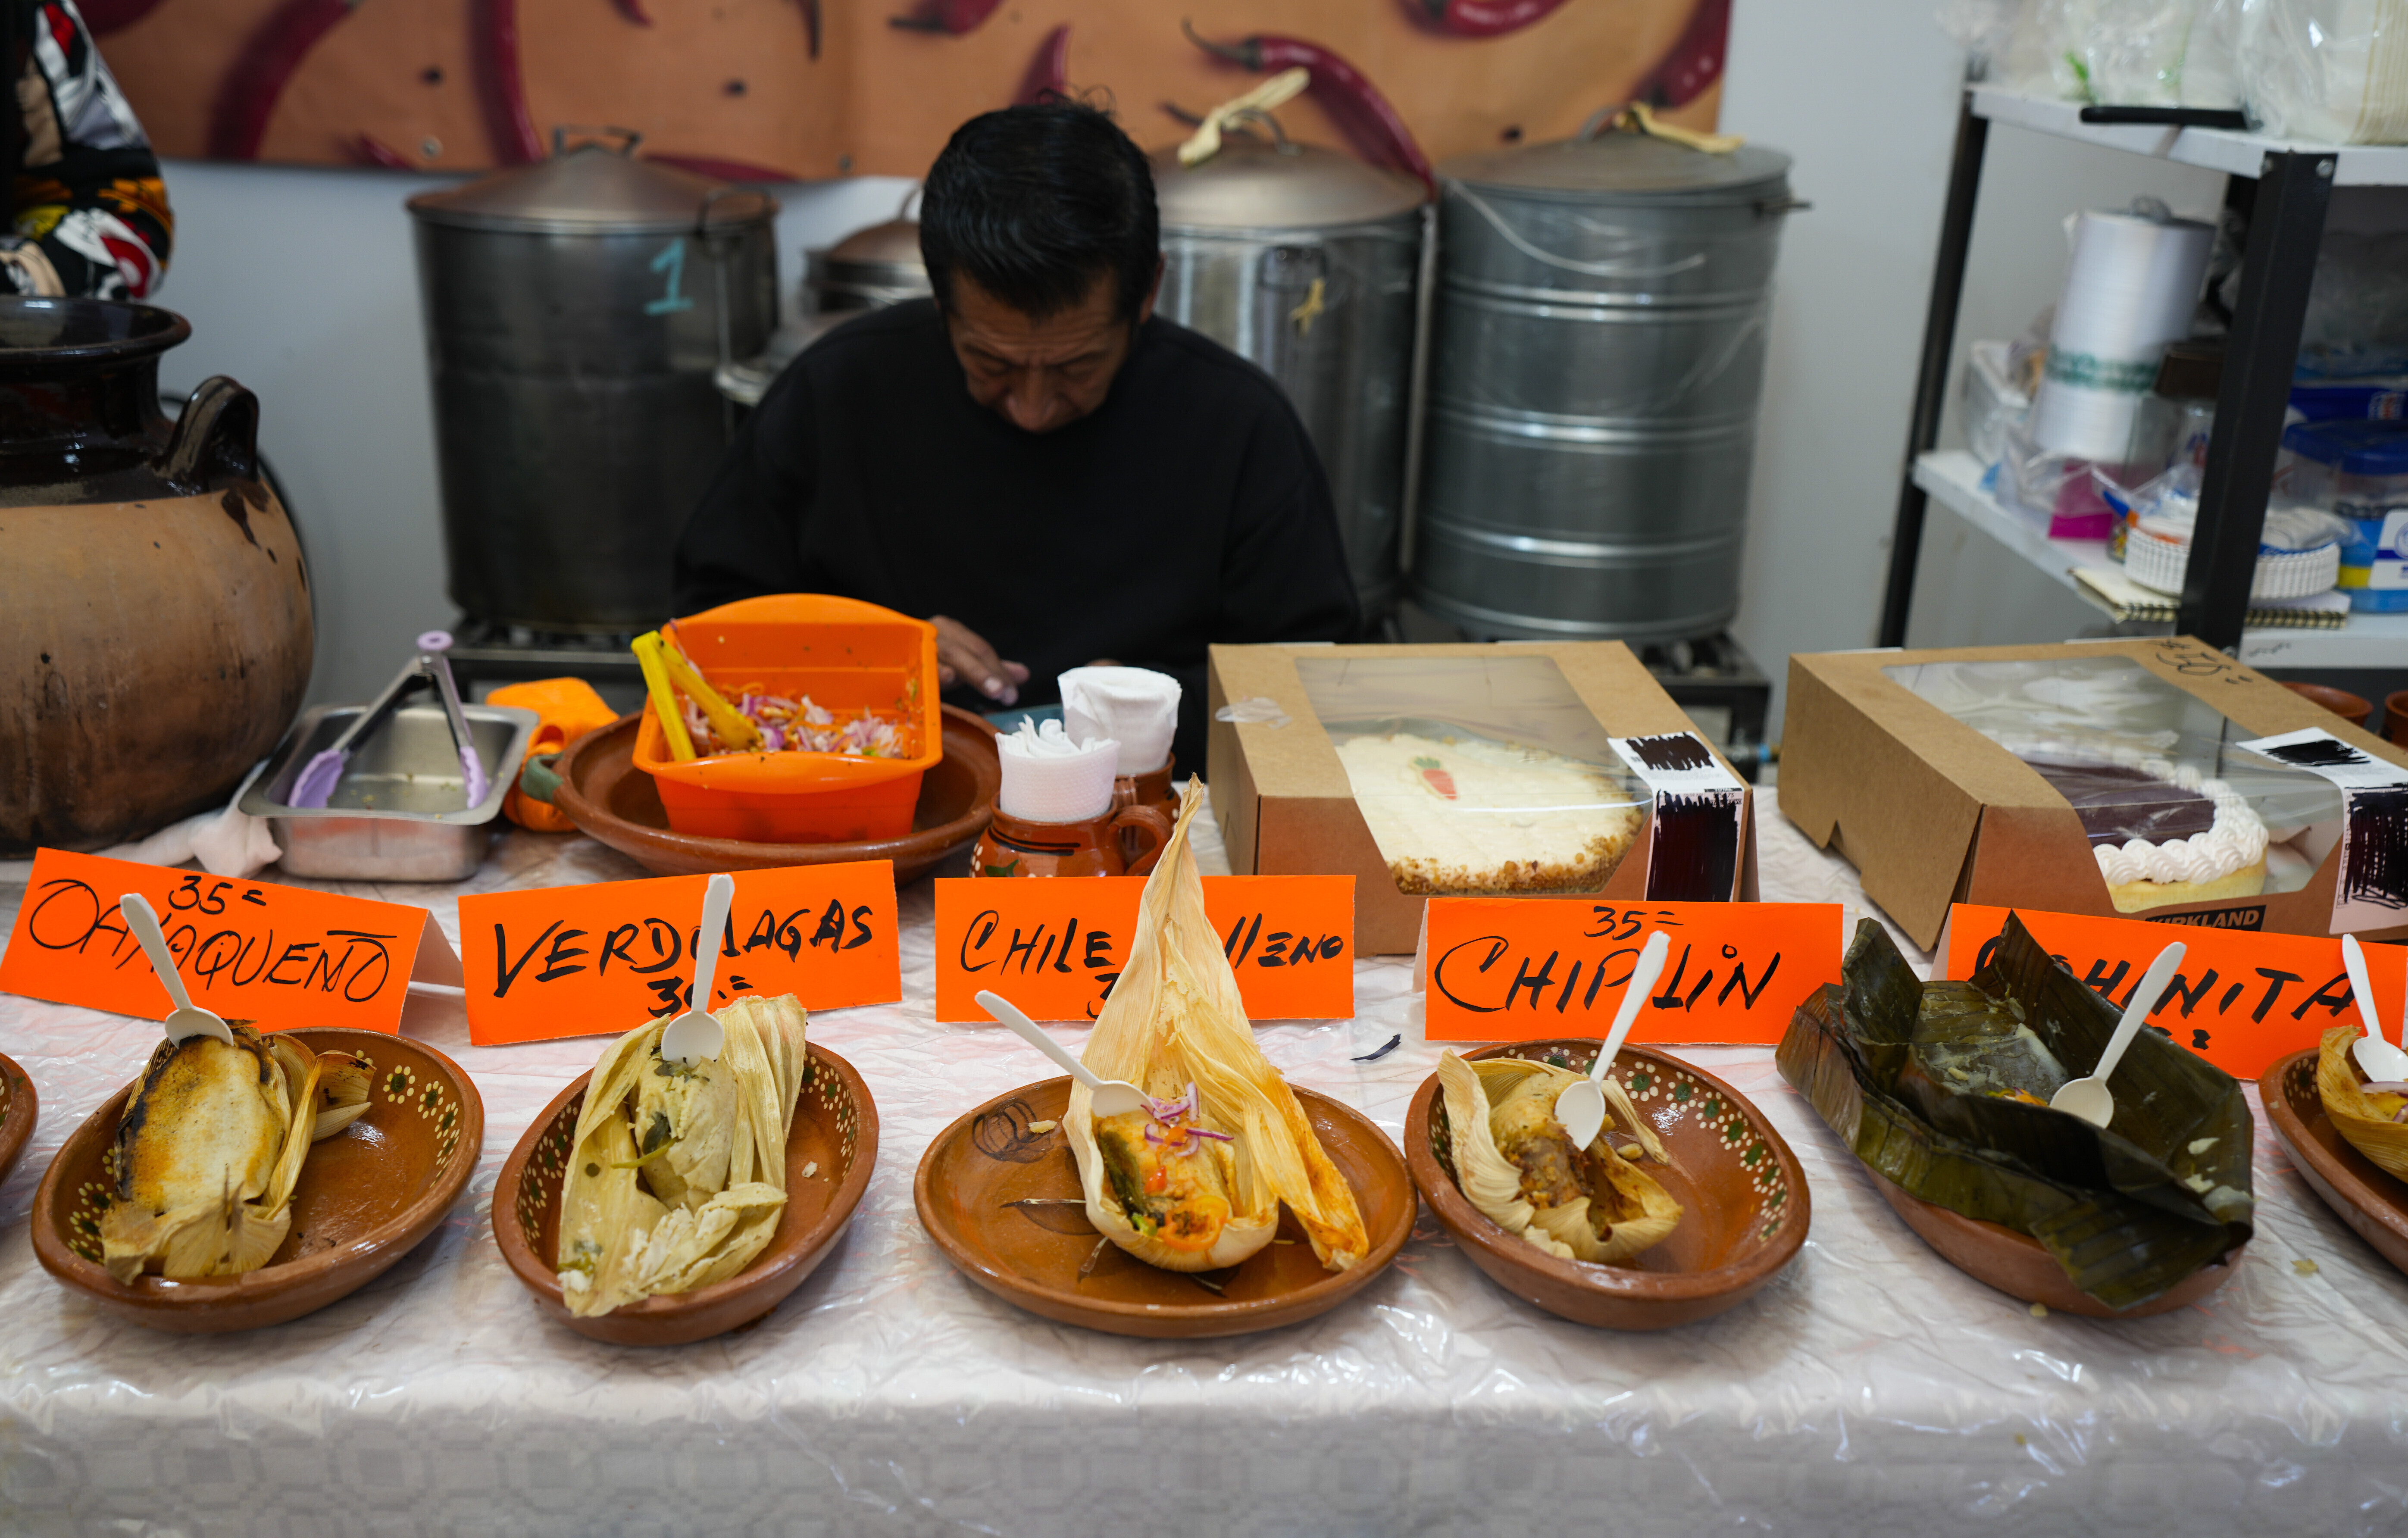 Diferentes estilos de tamal son expuestos sobre una mesa durante la feria de tamales en el vecindario de Iztapalapa, en la Ciudad de México, el 27 de enero de 2023. Tamal proviene del vocablo náhuatl “tamalli” que significa envuelto. (AP Foto/Fernando Llano)